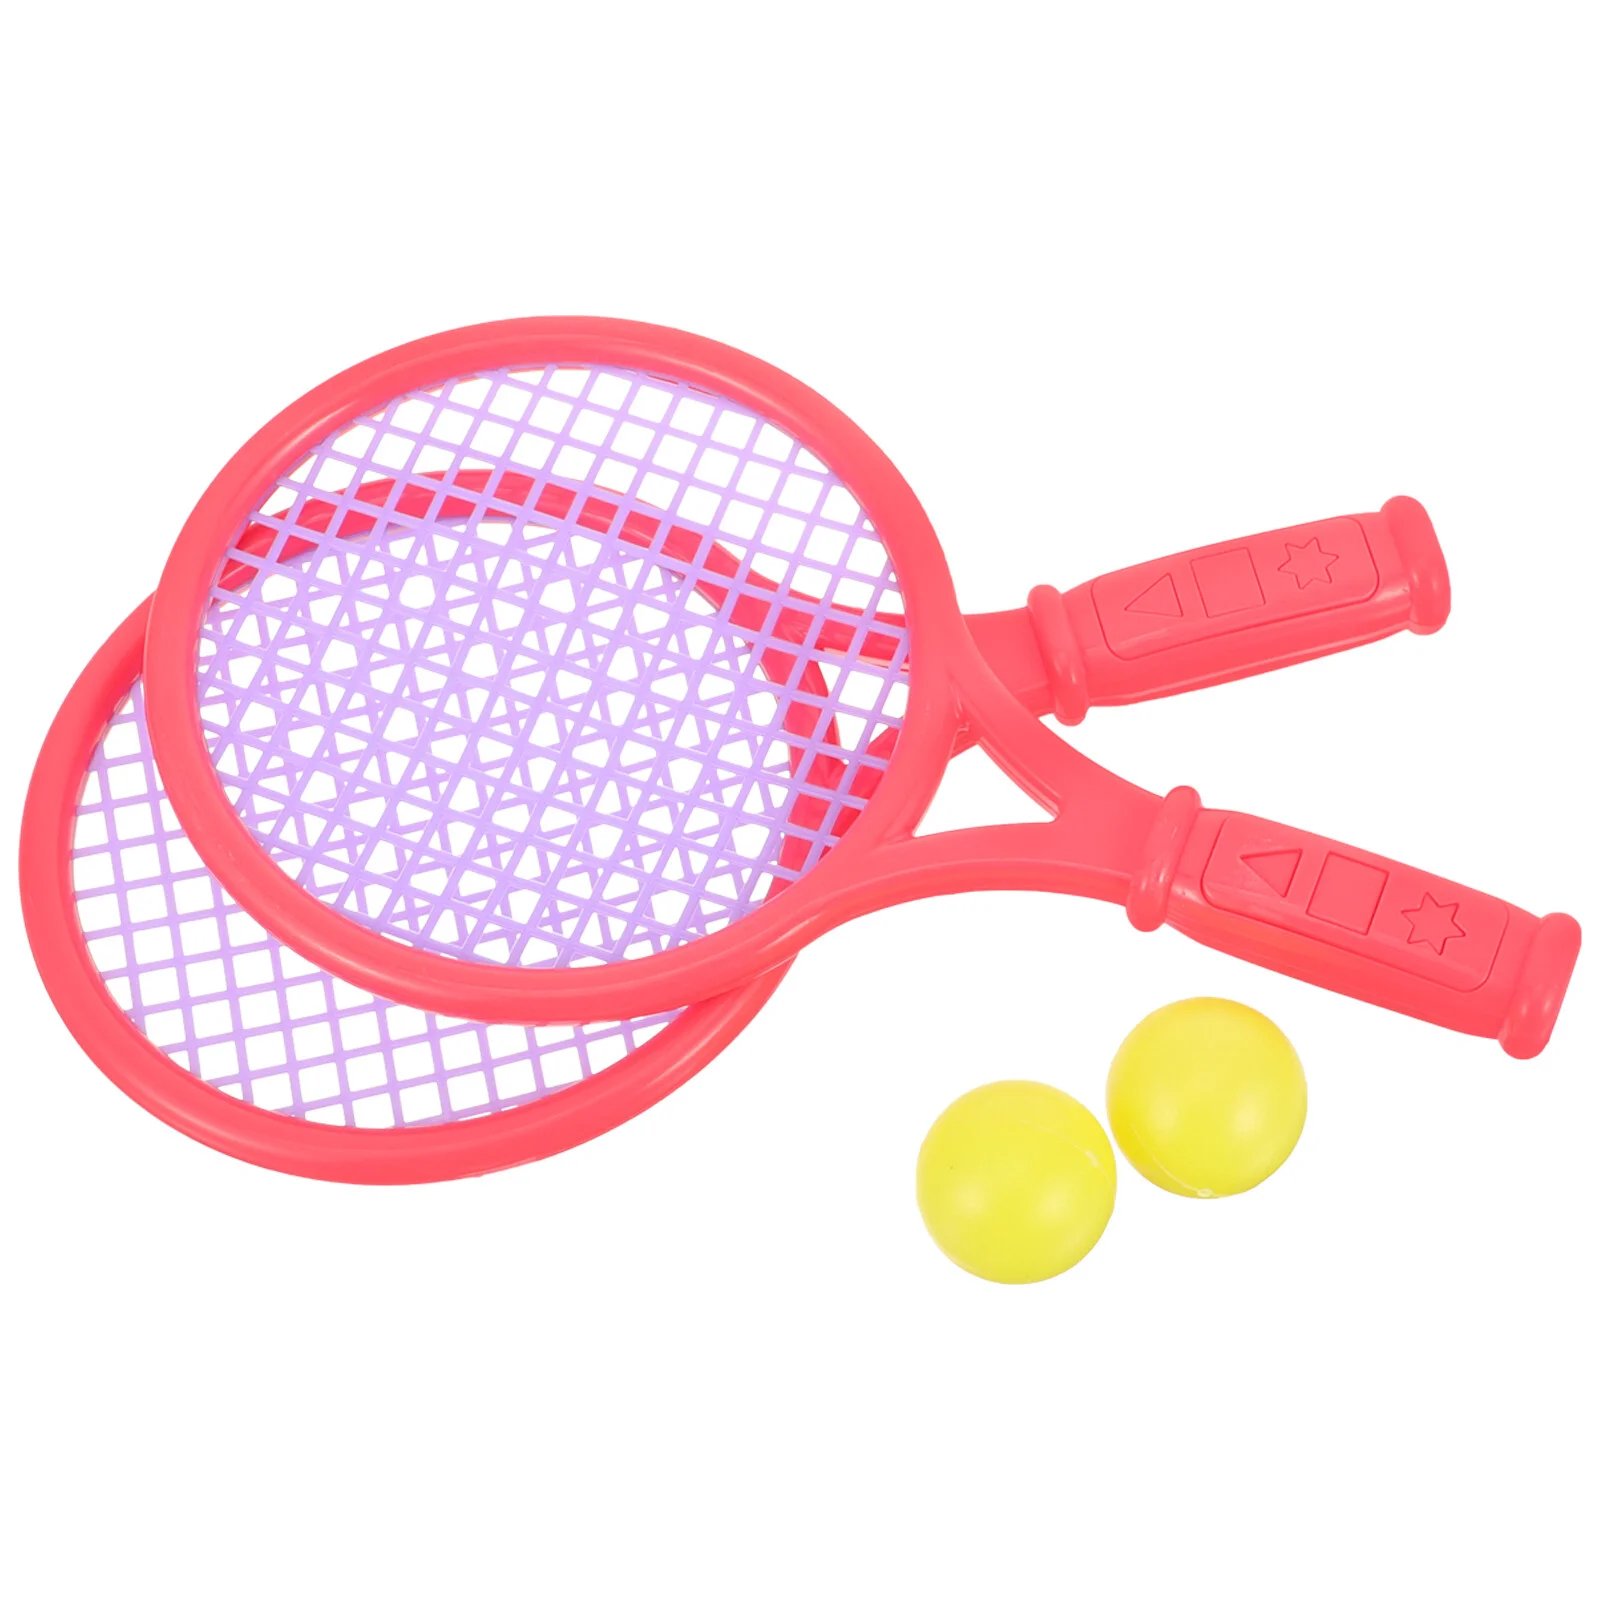 1 Par de Crianças Raquete de Tênis de Crianças de Plástico Raquetes de Badminton Jogo de Adereços para o jardim-de-Infância Escola Primária (Tamanho S Aleatória